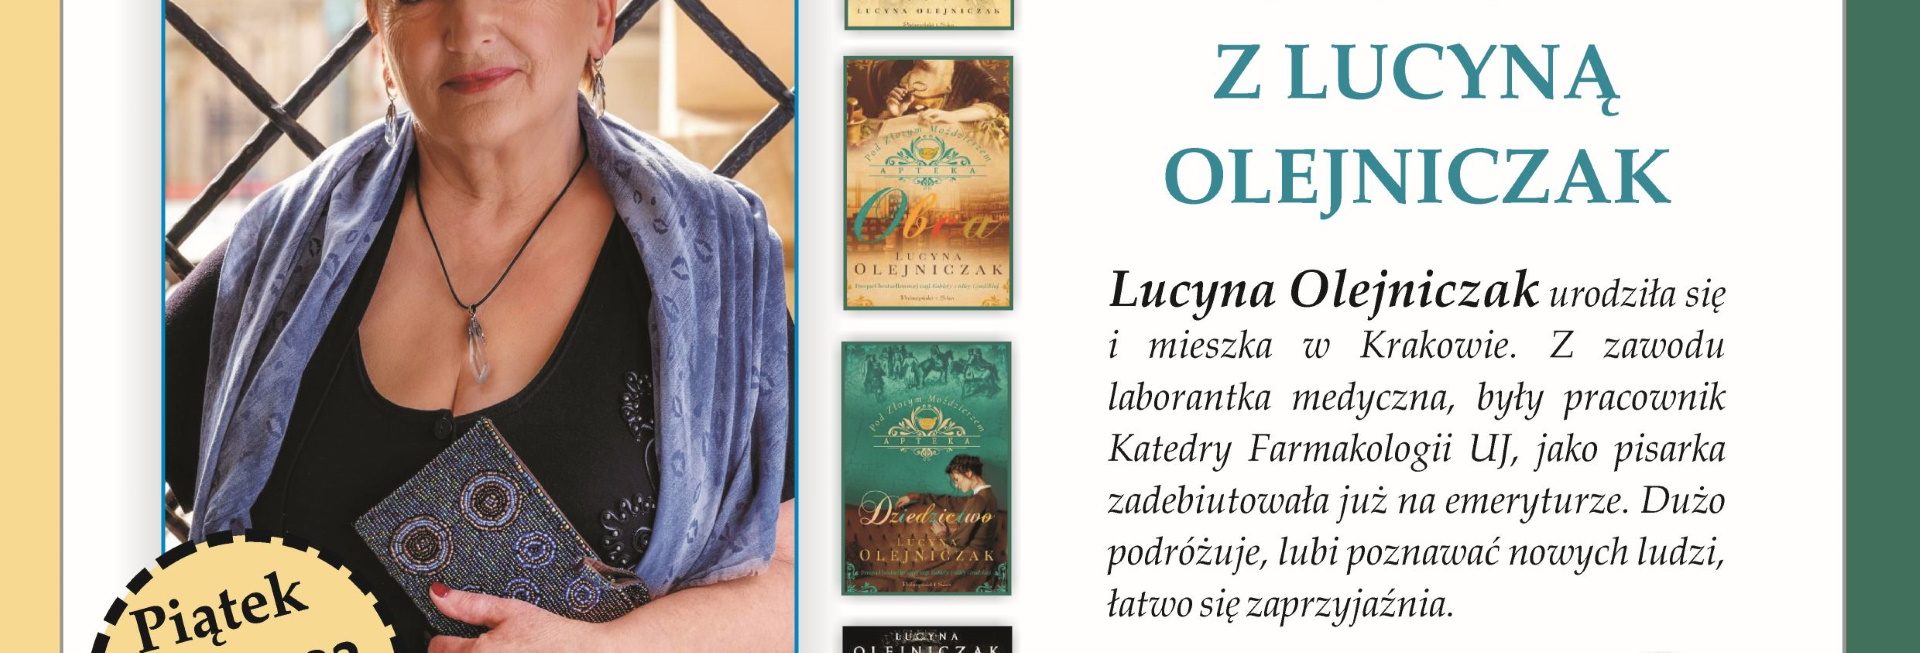 Plakat zapraszający na spotkanie autorskie z pisarką Lucyną Olejniczak Gietrzwałd 2022.